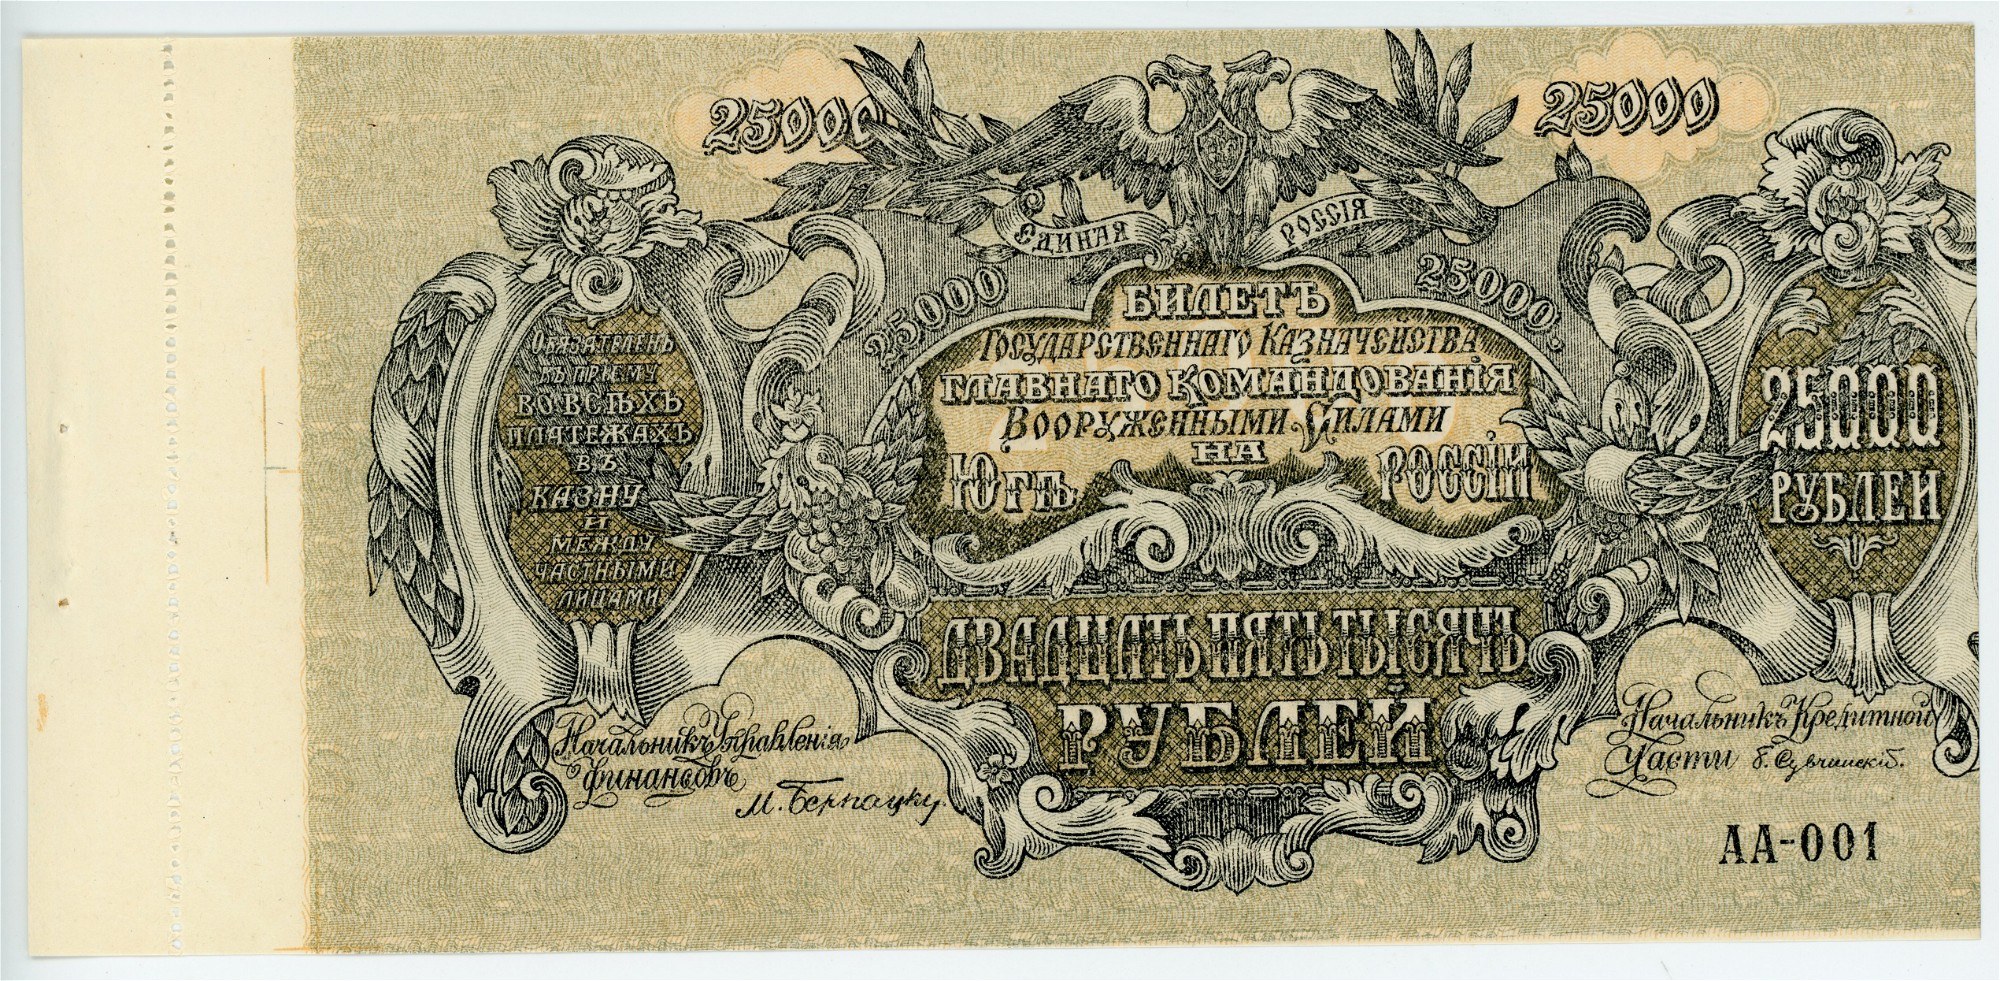 Купюра 25000. 25000 Рублей купюра. Казначейский билет Англии 20 века.